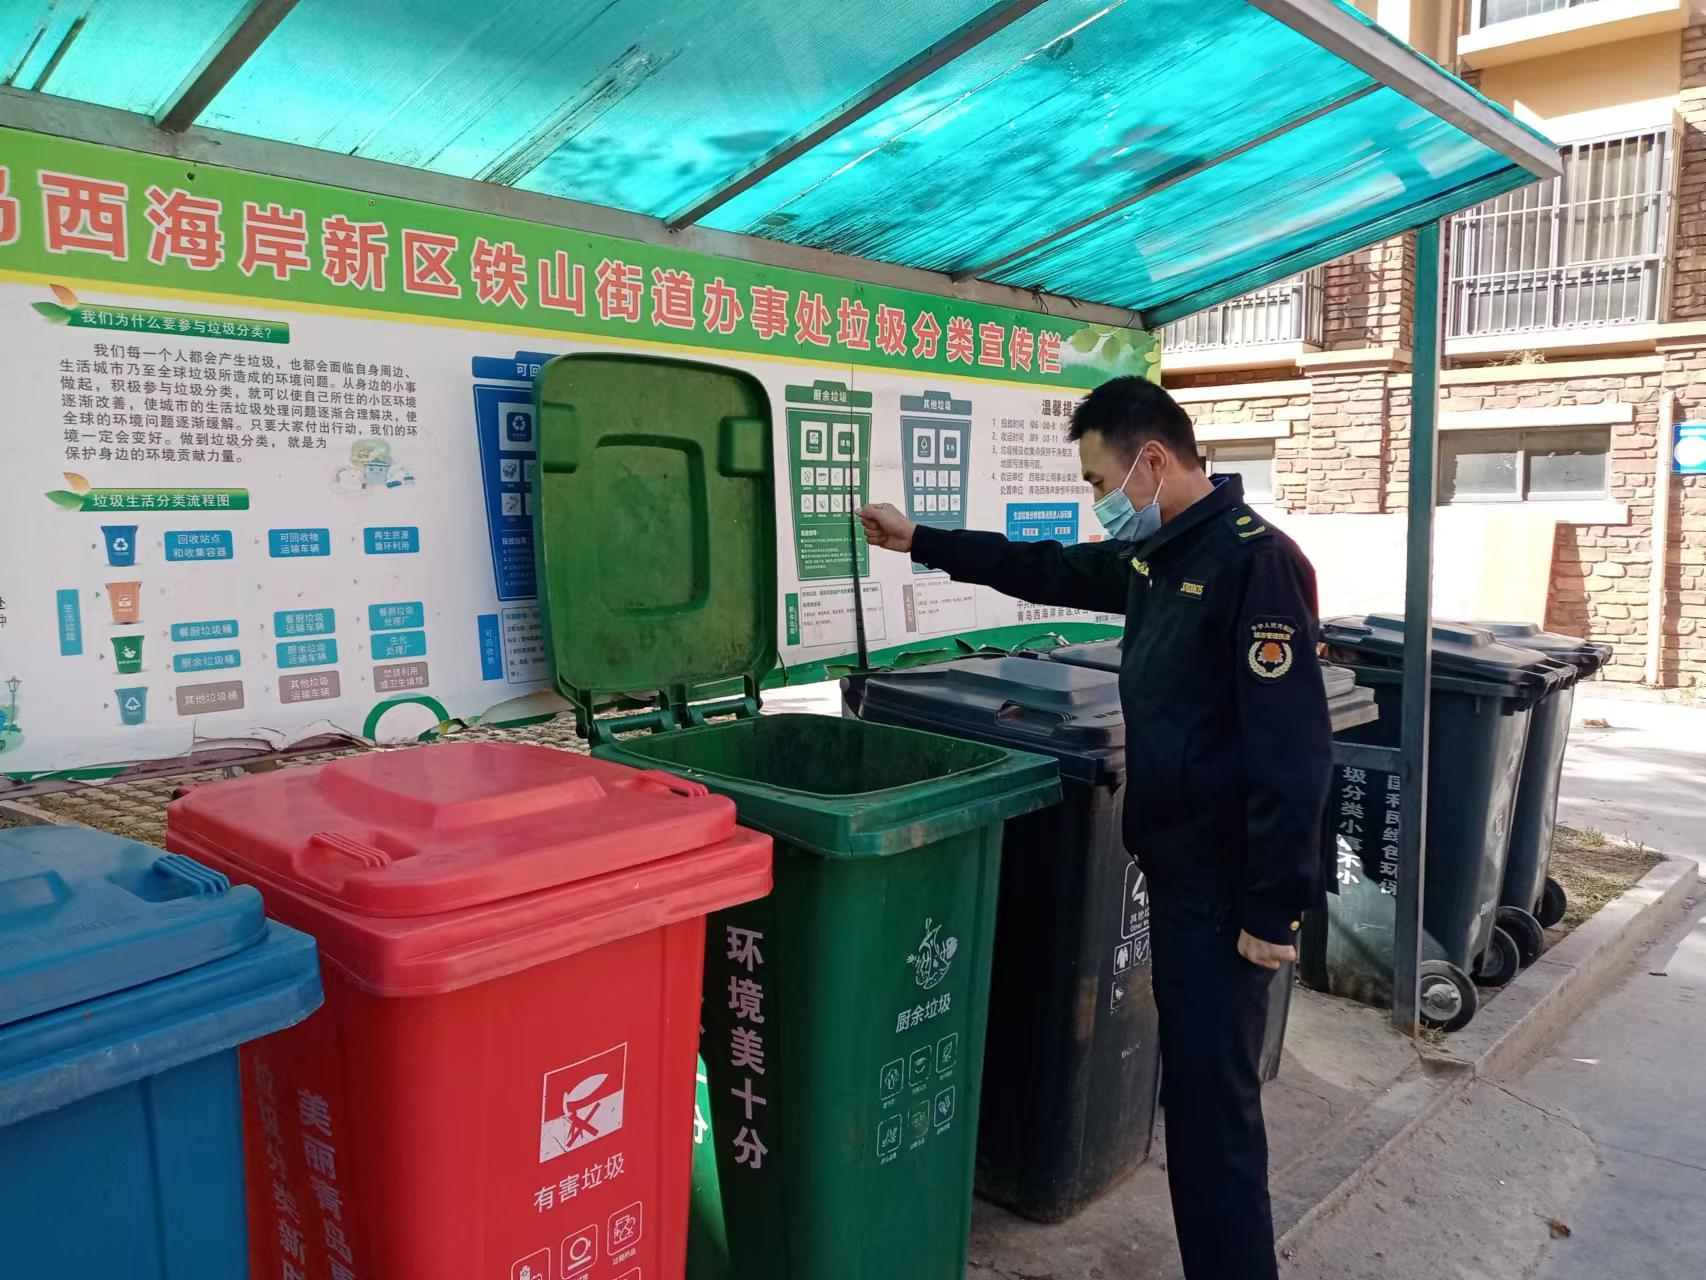 青岛市黄岛区铁山街道持续开展垃圾分类执法行动